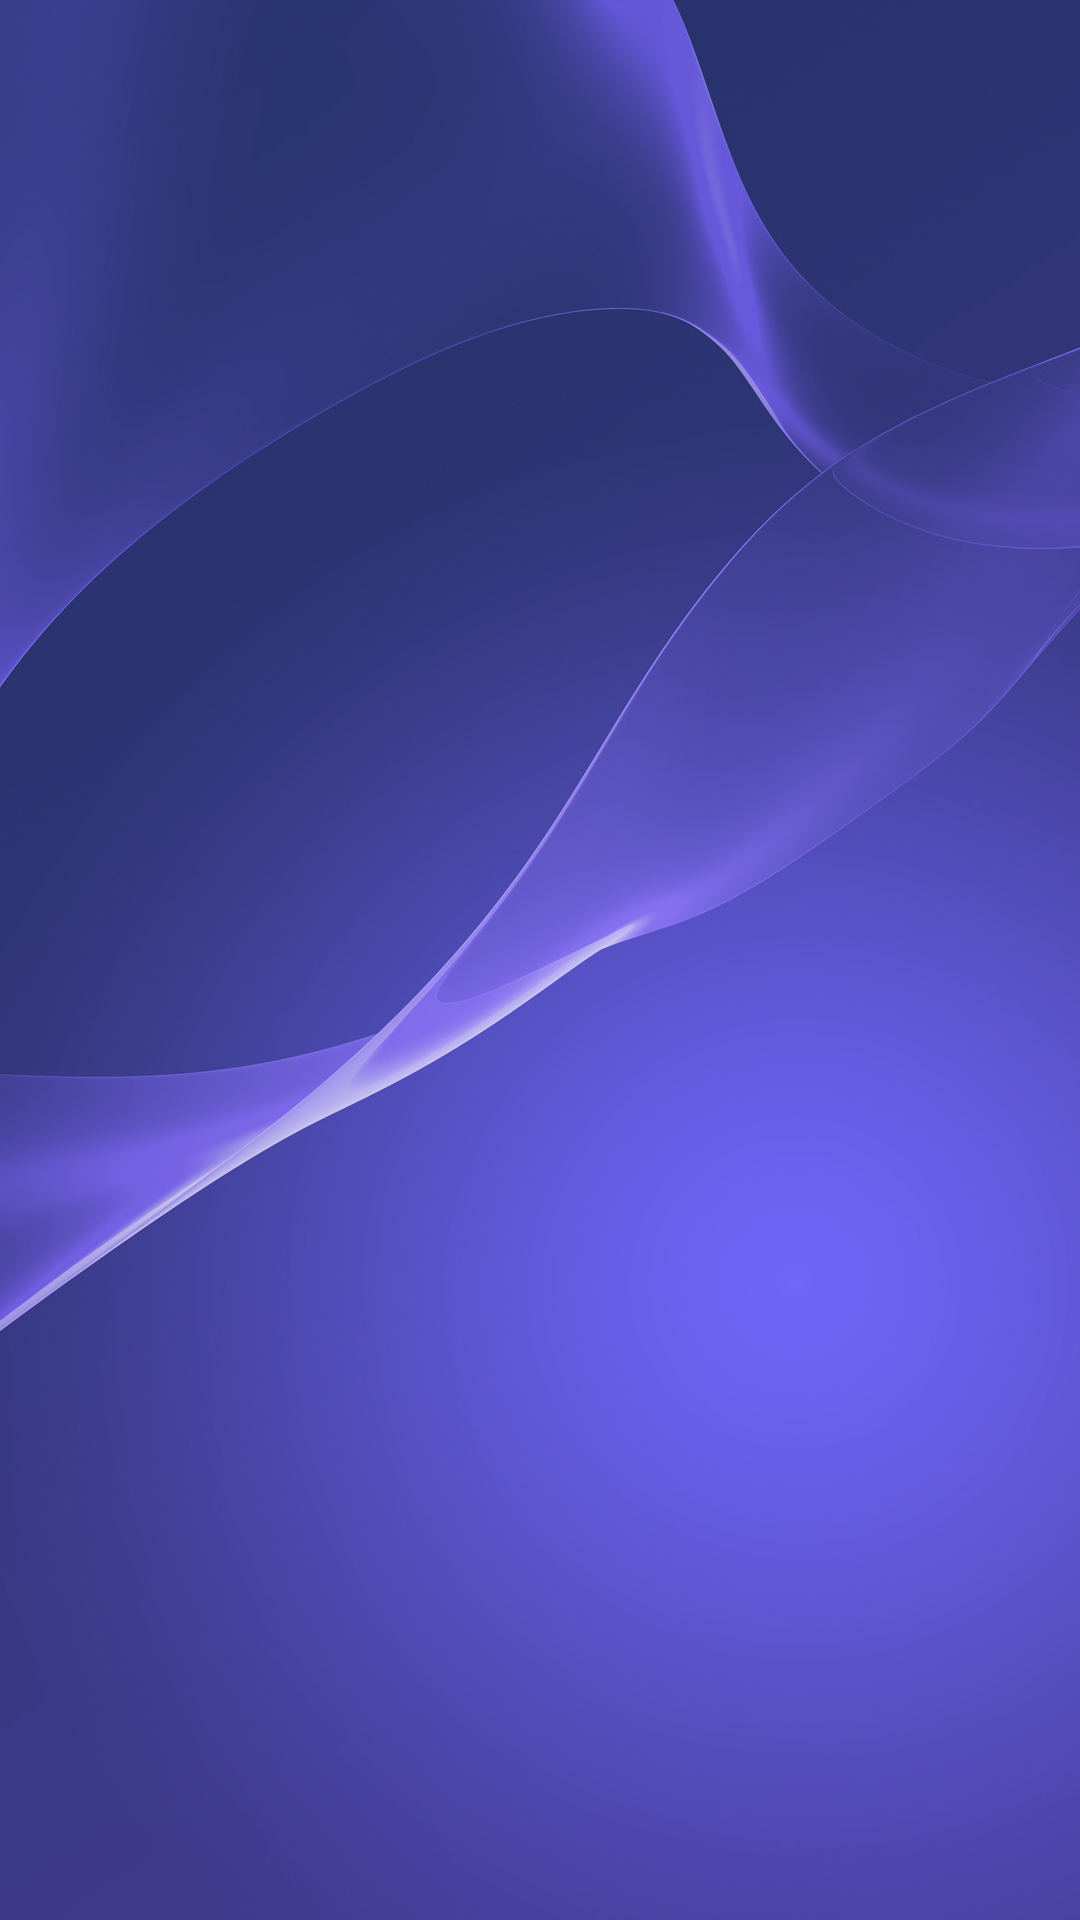 sony xperia wallpaper hd per cellulare,blu,viola,viola,lilla,blu elettrico